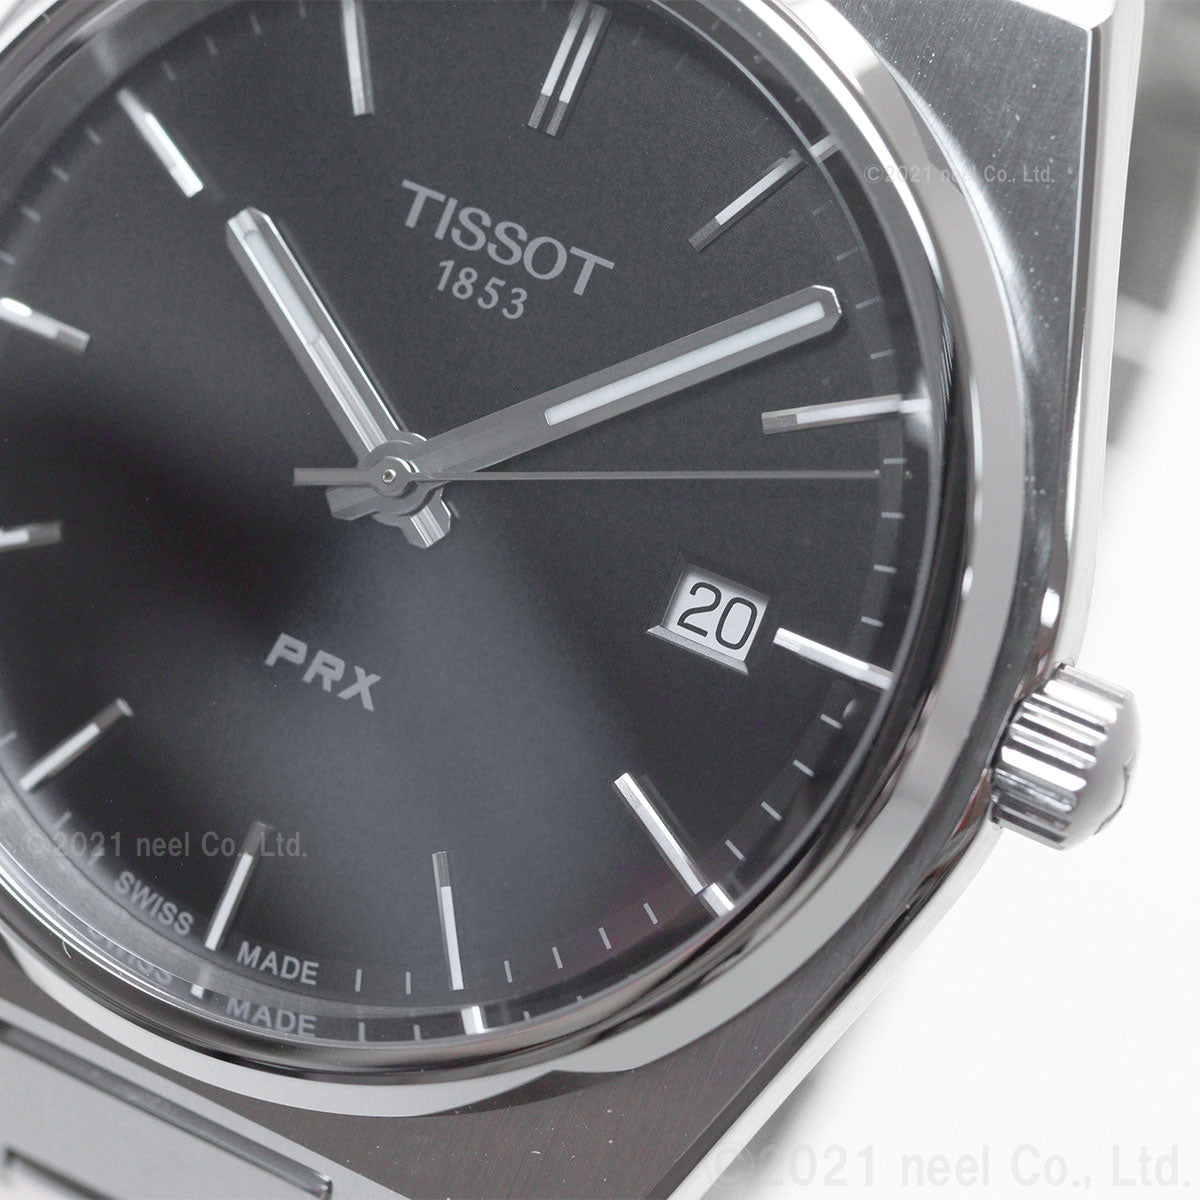 ティソ TISSOT 腕時計 メンズ PRX ピーアールエックス T137.410.11.051.00